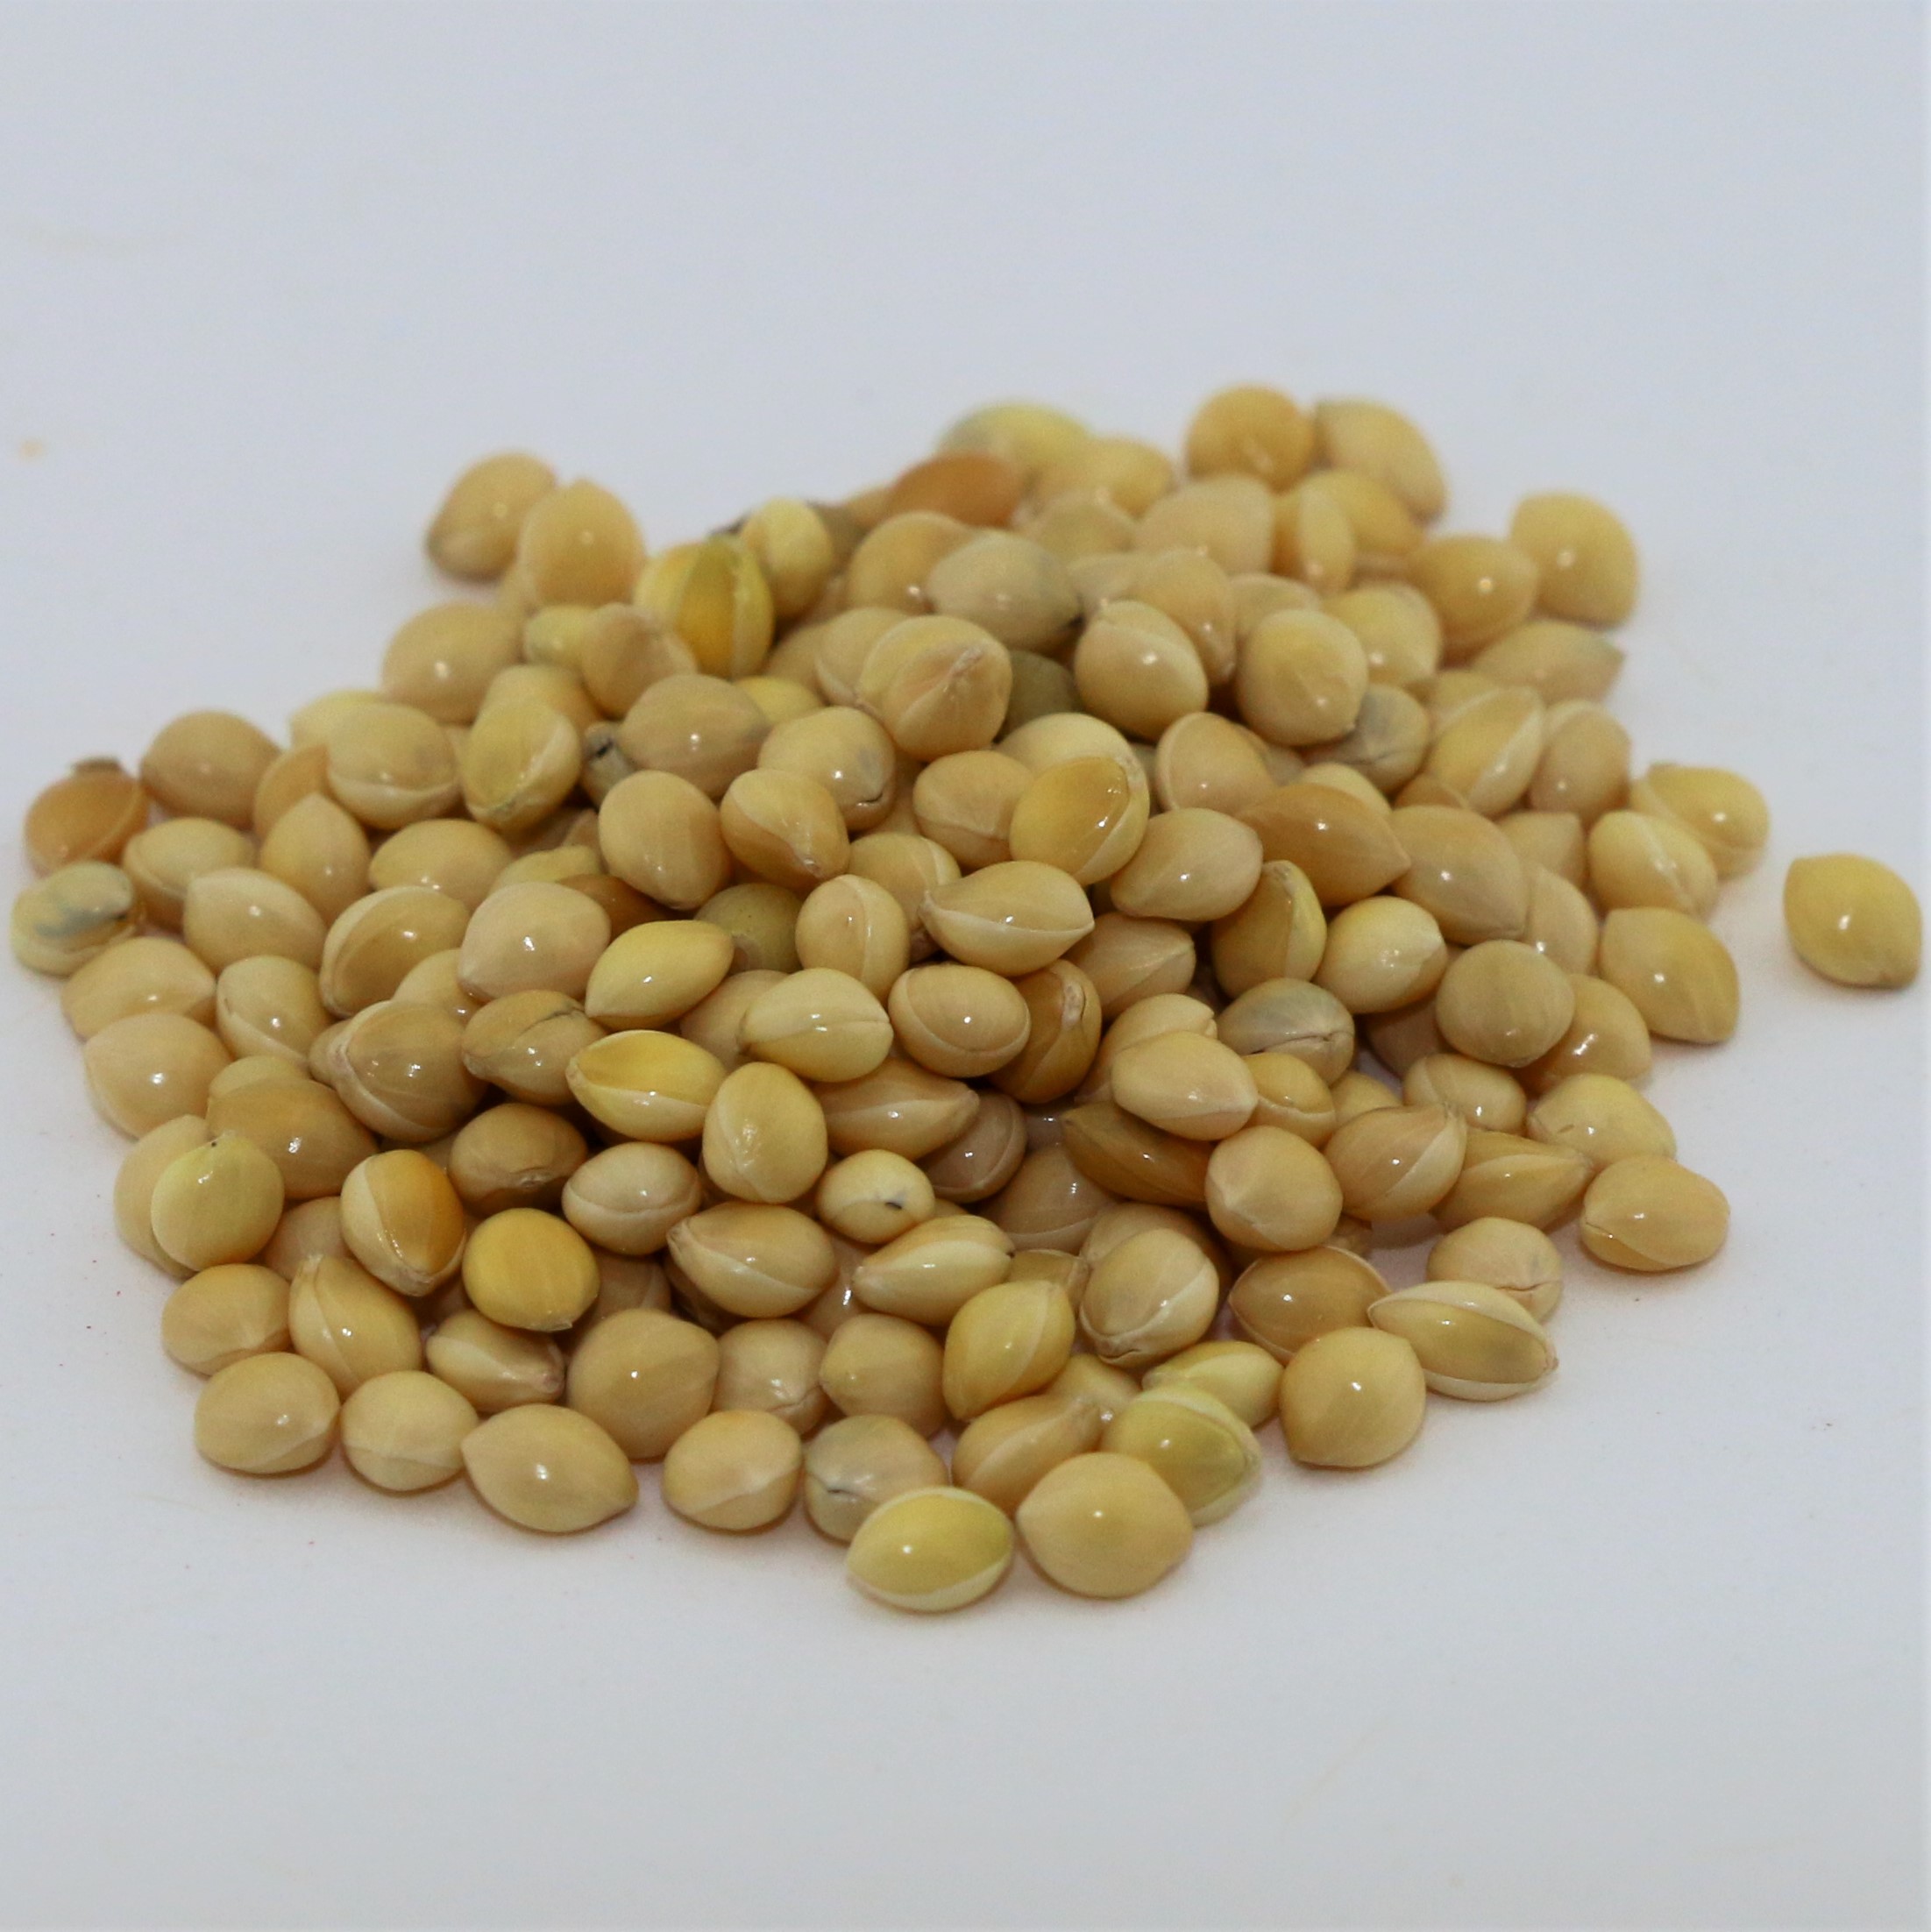 Graines de millet blanc 2 kg - Maska Select